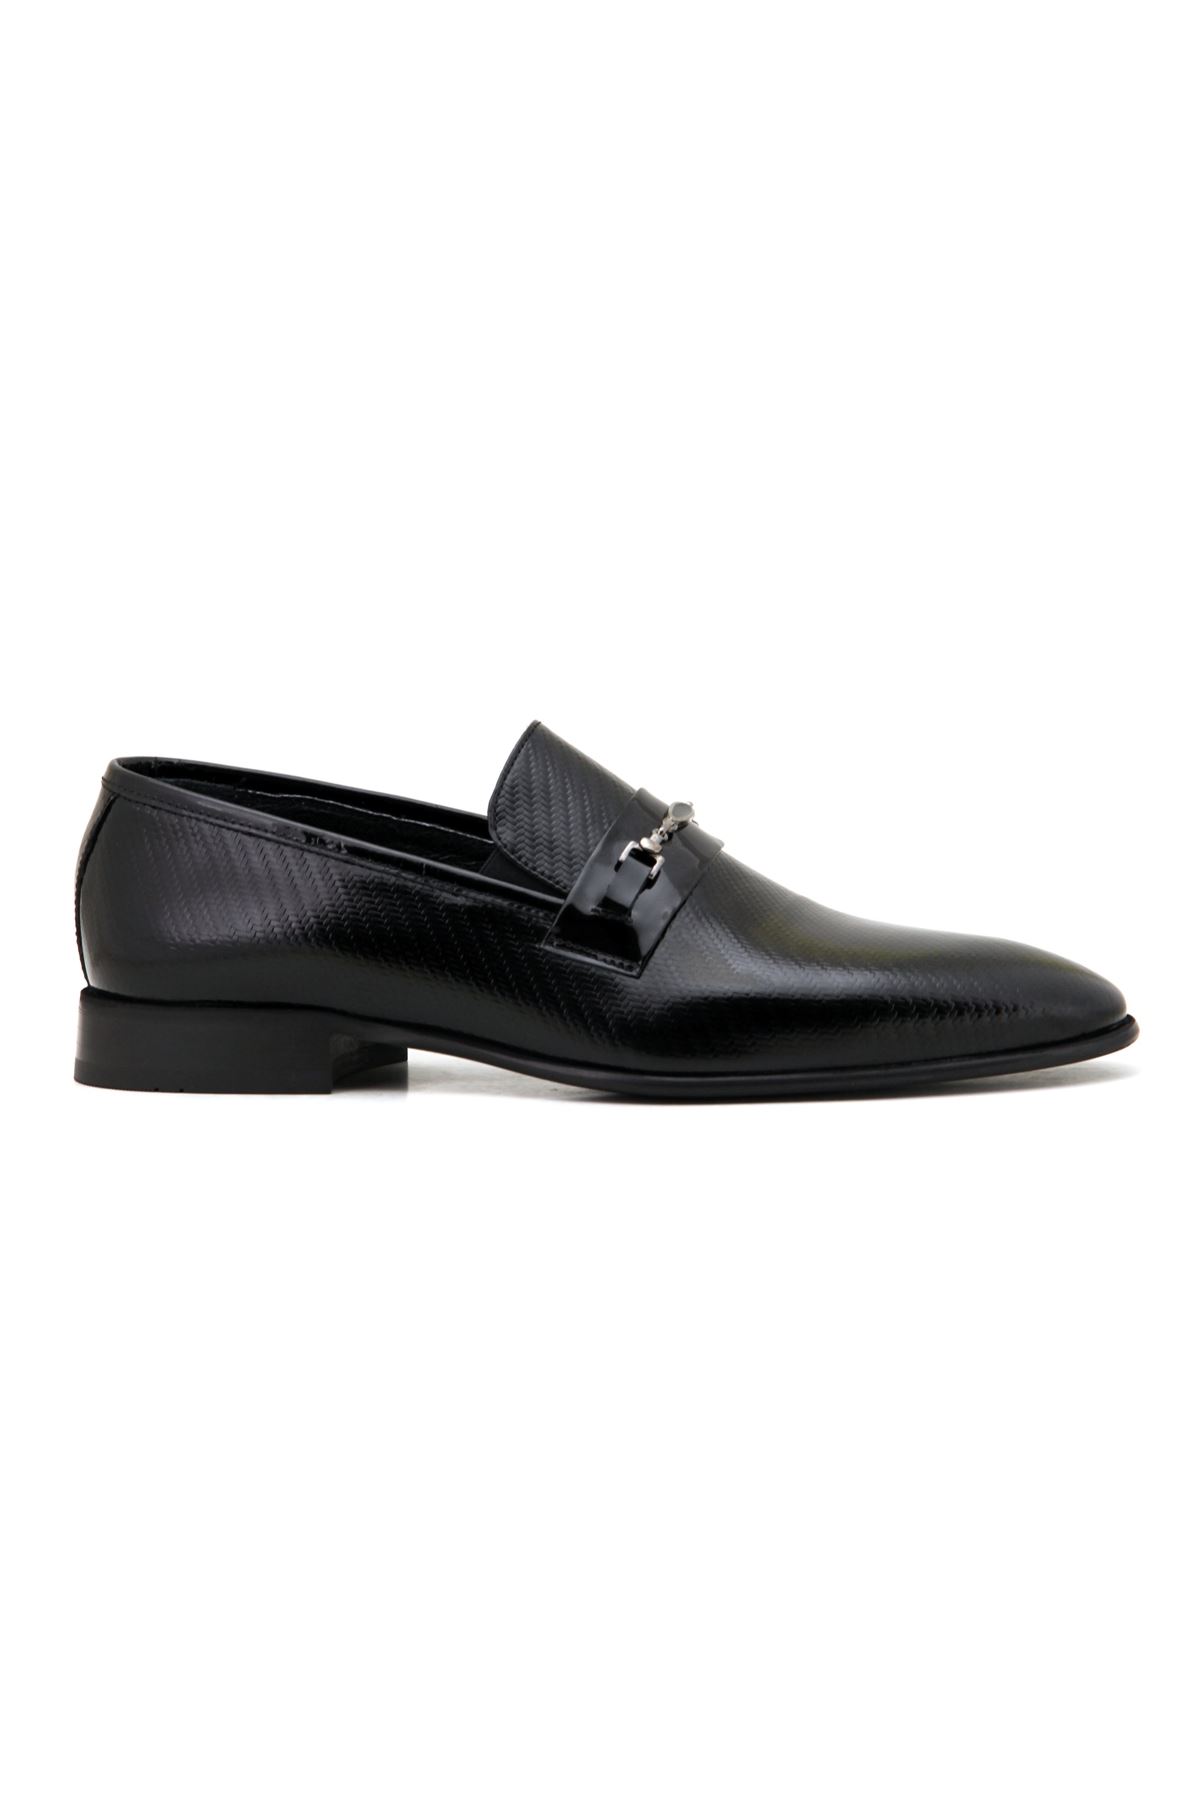 Marcomen 3006 Deri Klasik Erkek Ayakkabı - Siyah Rugan